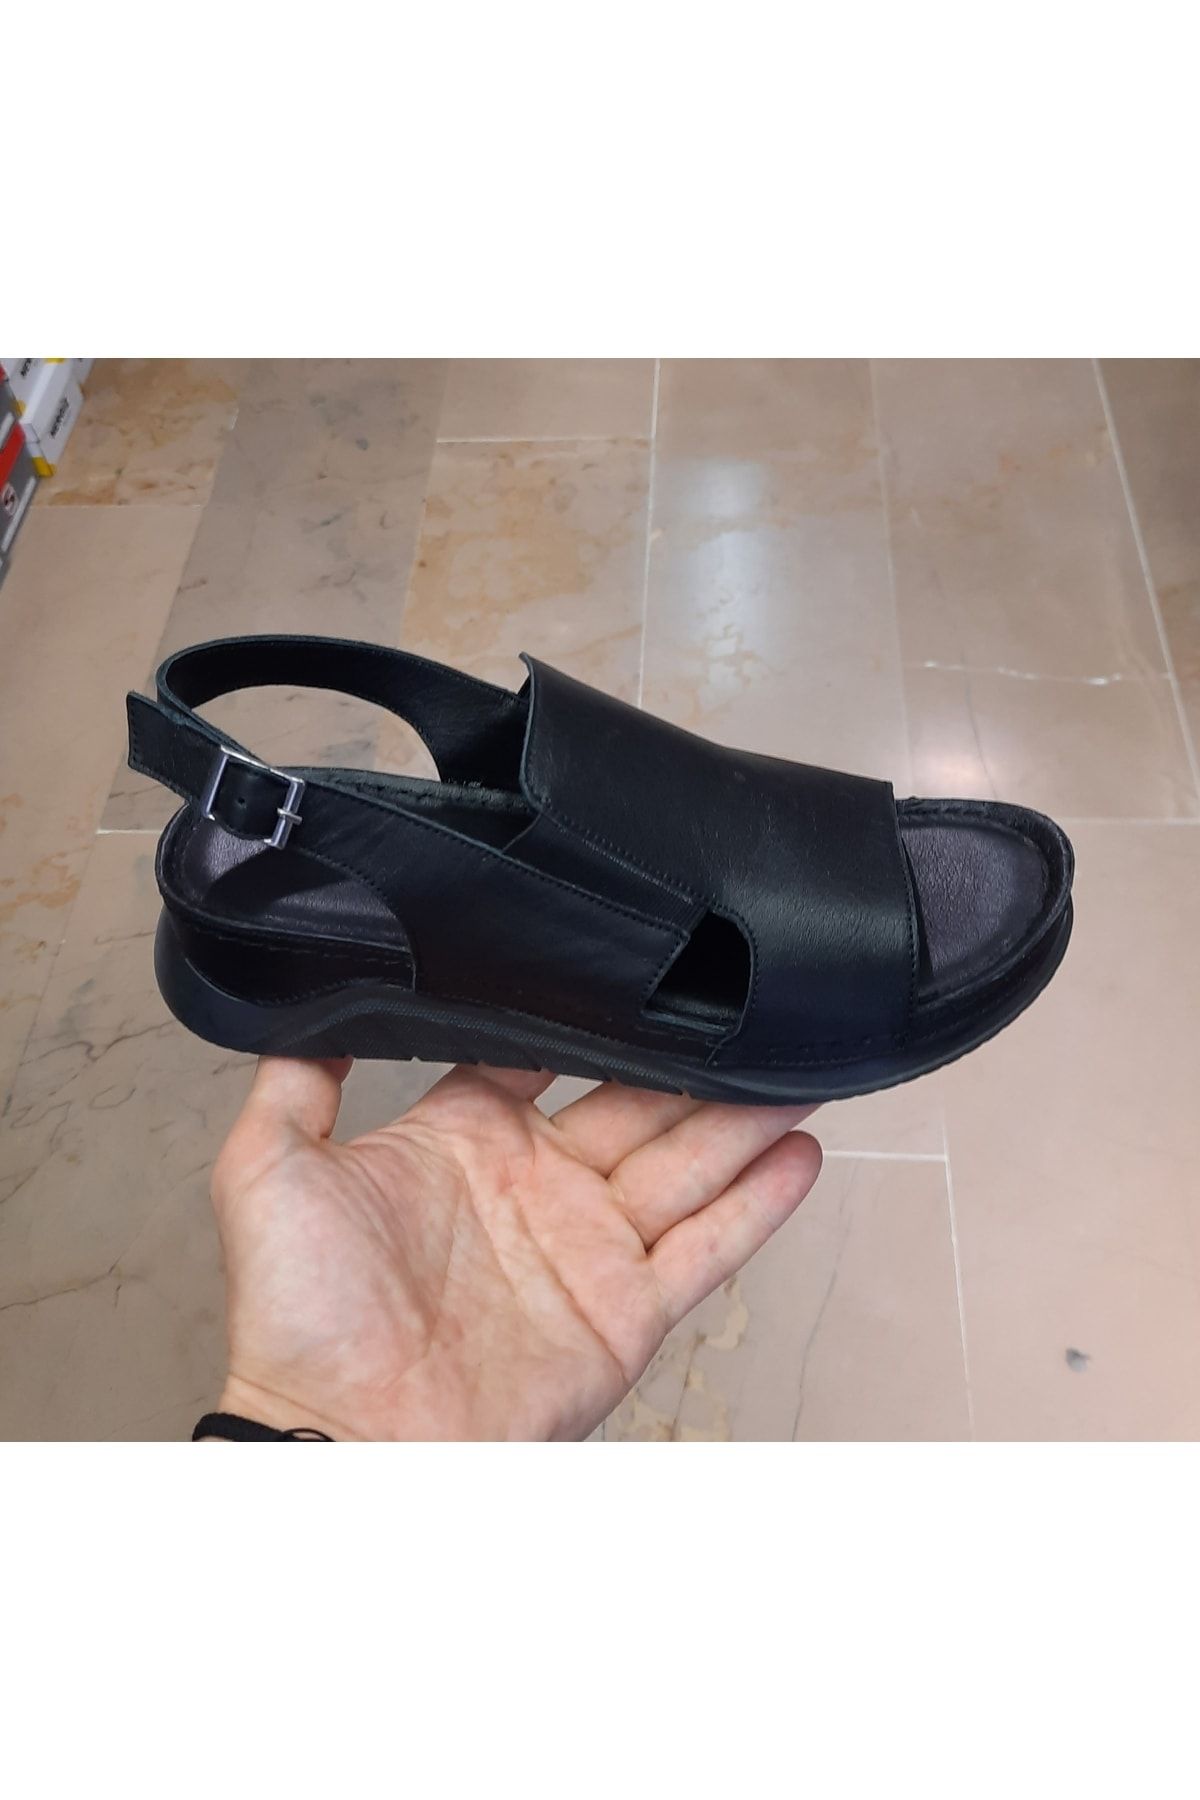 Belox Kadın Içi-dışı Hakiki Deri Ortopedik Masaj Tabanlı Siyah Açık Sandalet Ayakkabı